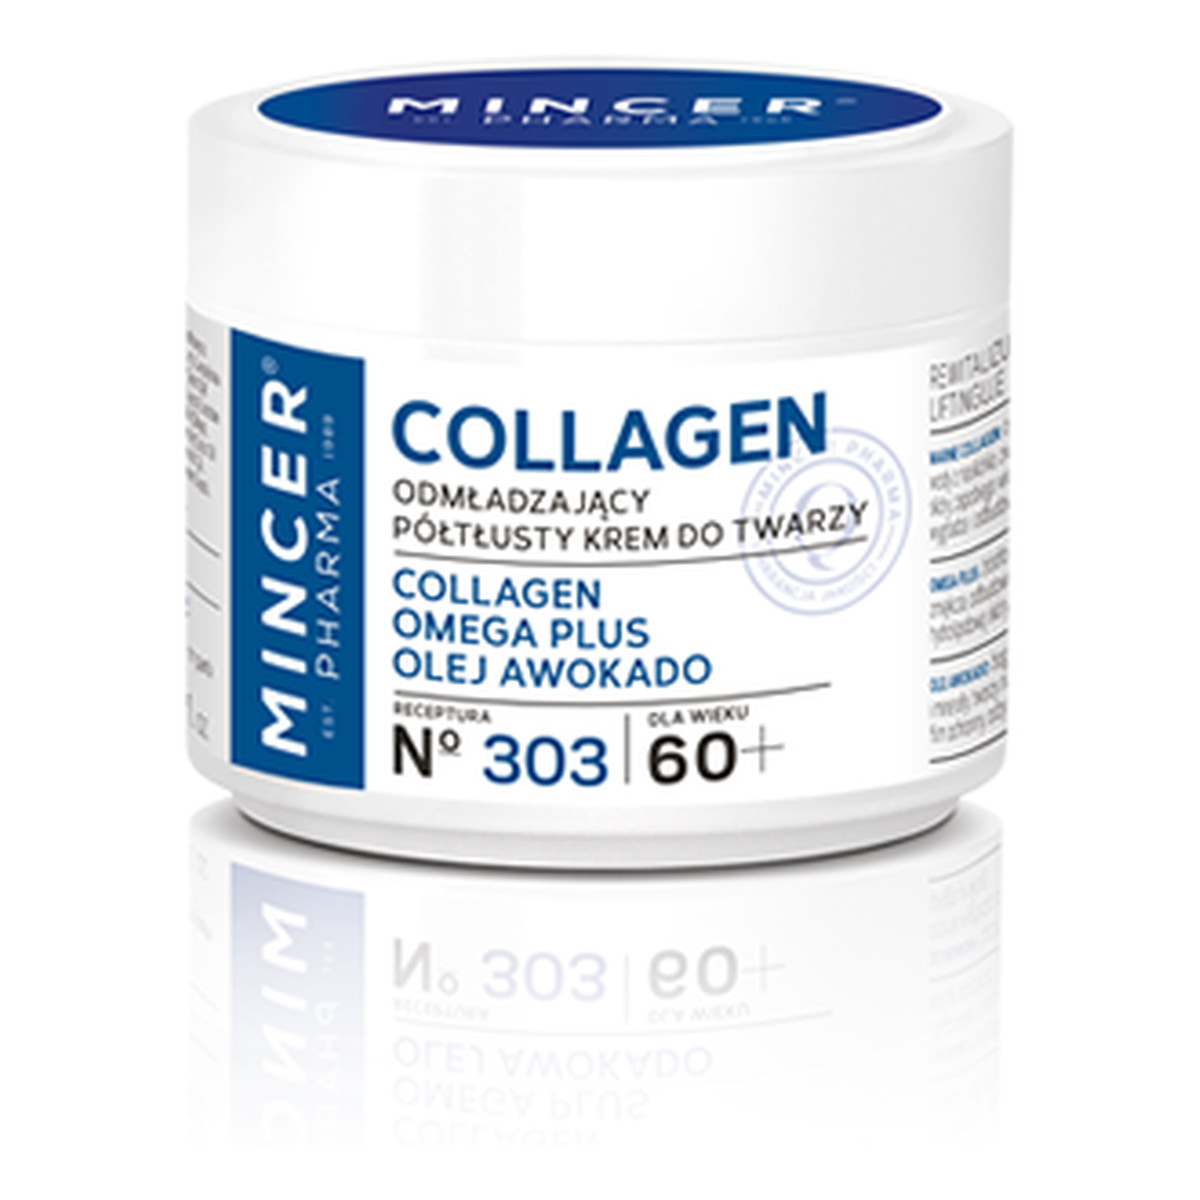 Mincer Pharma Collagen 60+ Odmładzający Półtłusty Krem Do Twarzy No 303 50ml